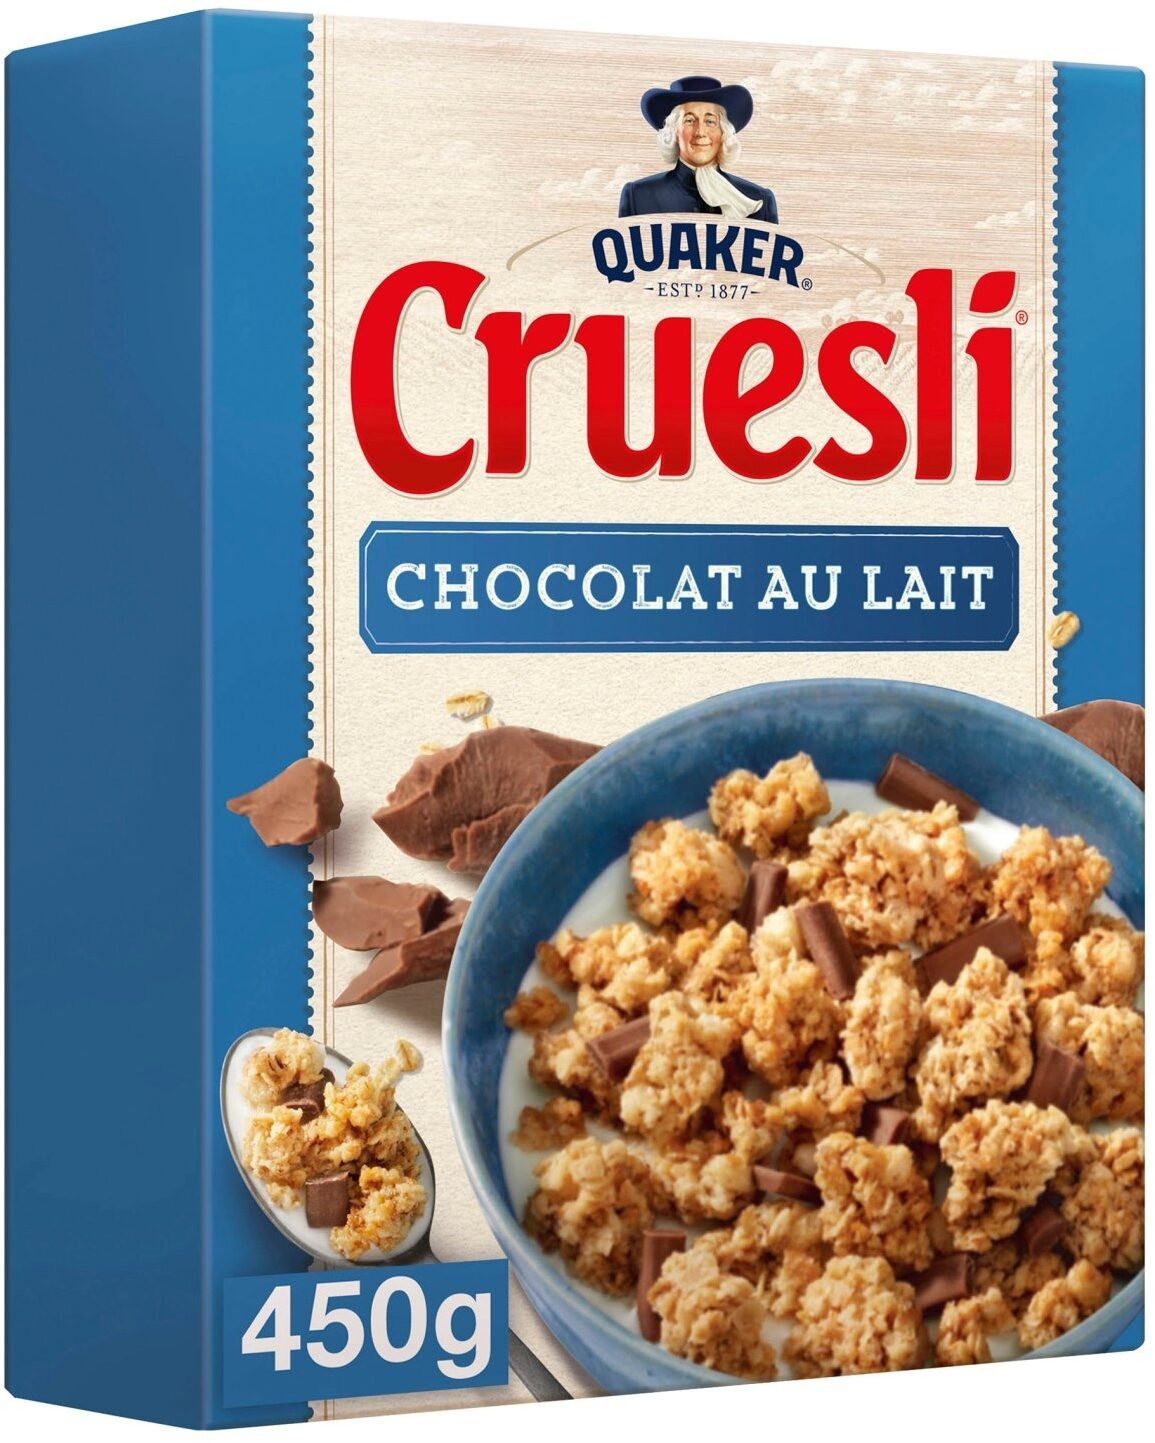 Quaker Cruesli Chocolat au lait - Product - fr